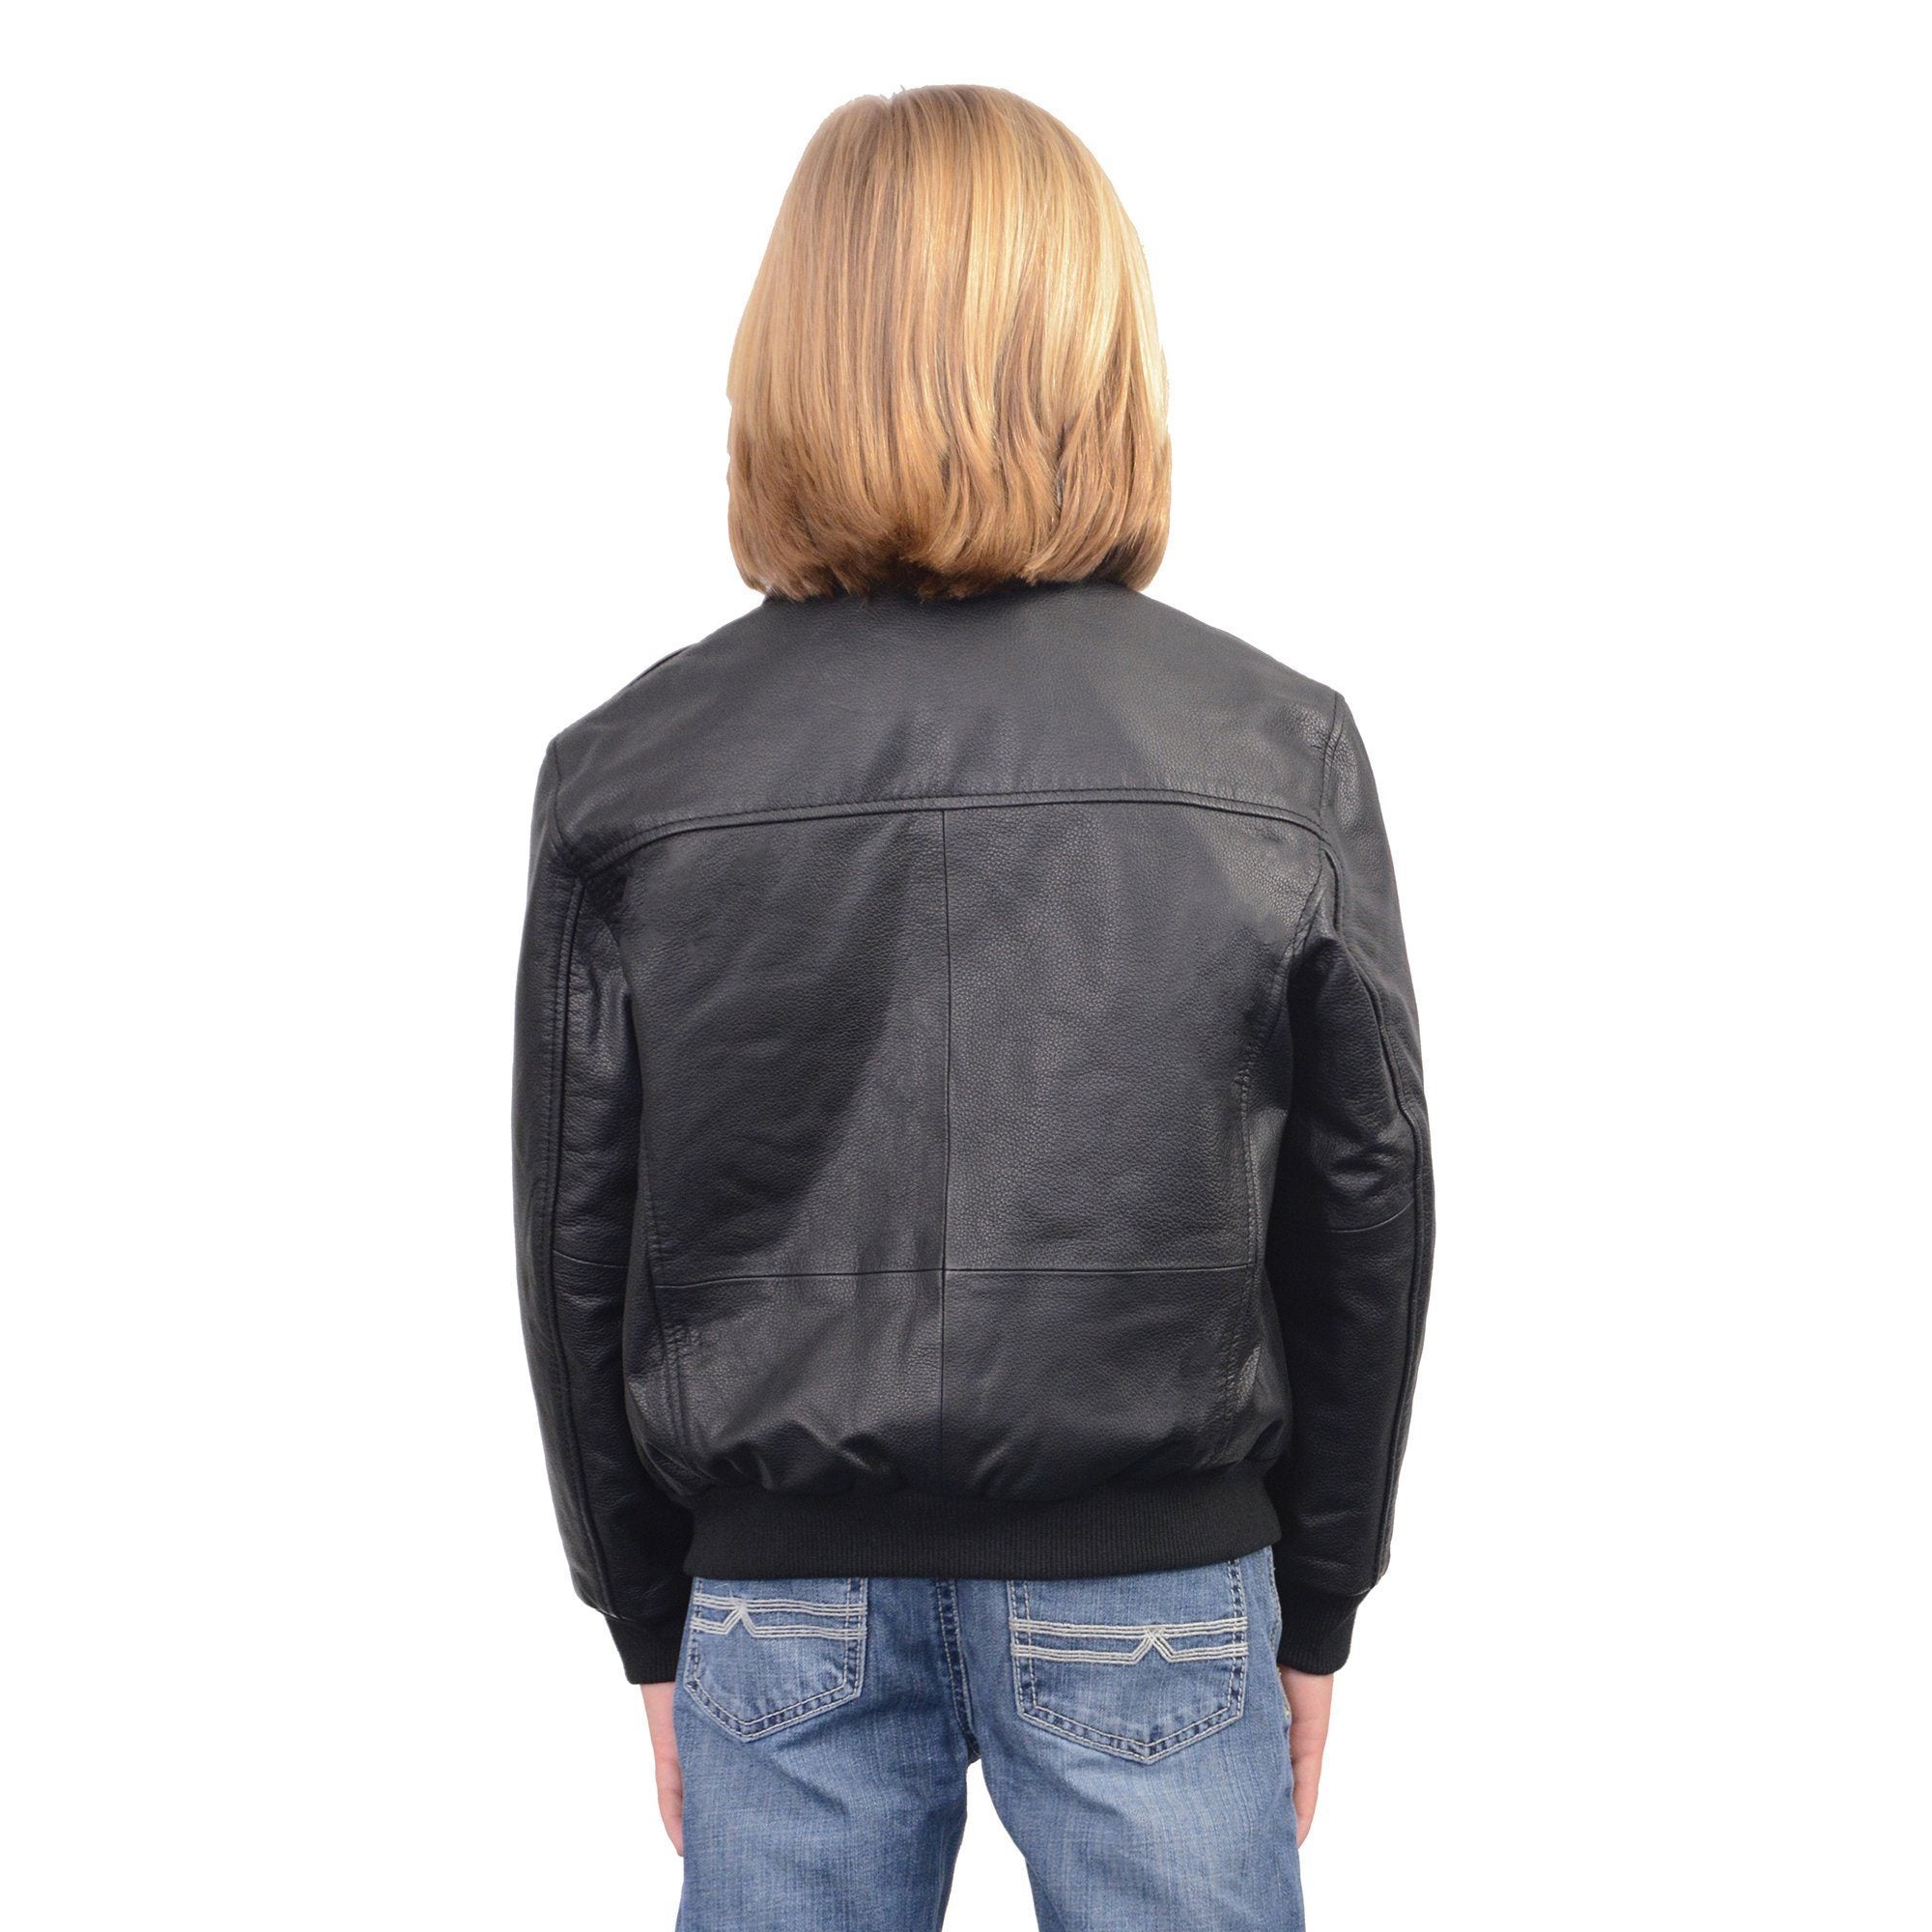 Milwaukee Leather LKK1930 Youth Size Black Leather Bomber Jacket